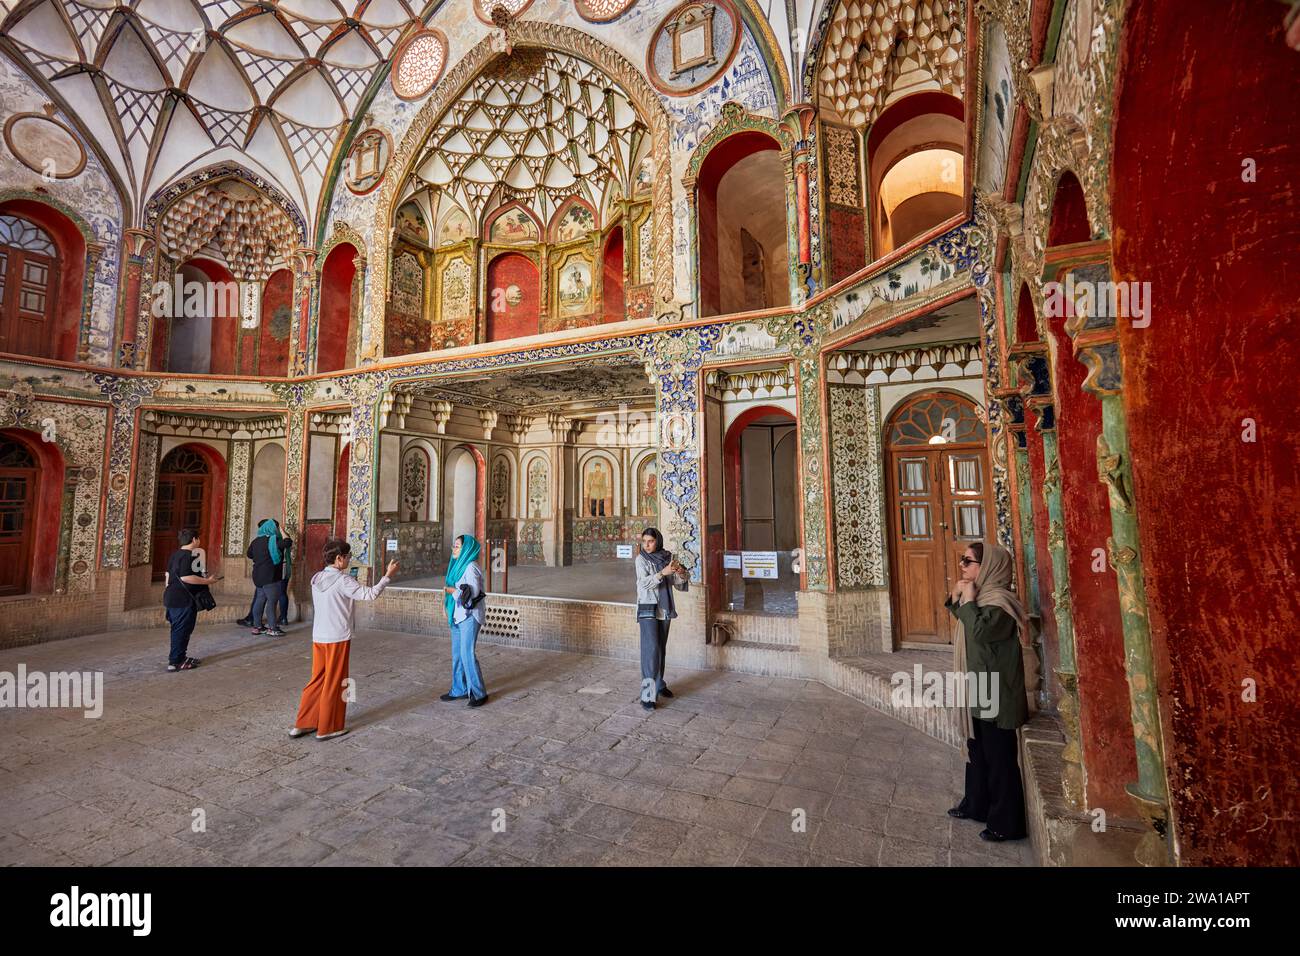 Les touristes visitent le hall principal de Borujerdi House, riche maison traditionnelle persane construite en 1857. Kashan, Iran. Banque D'Images